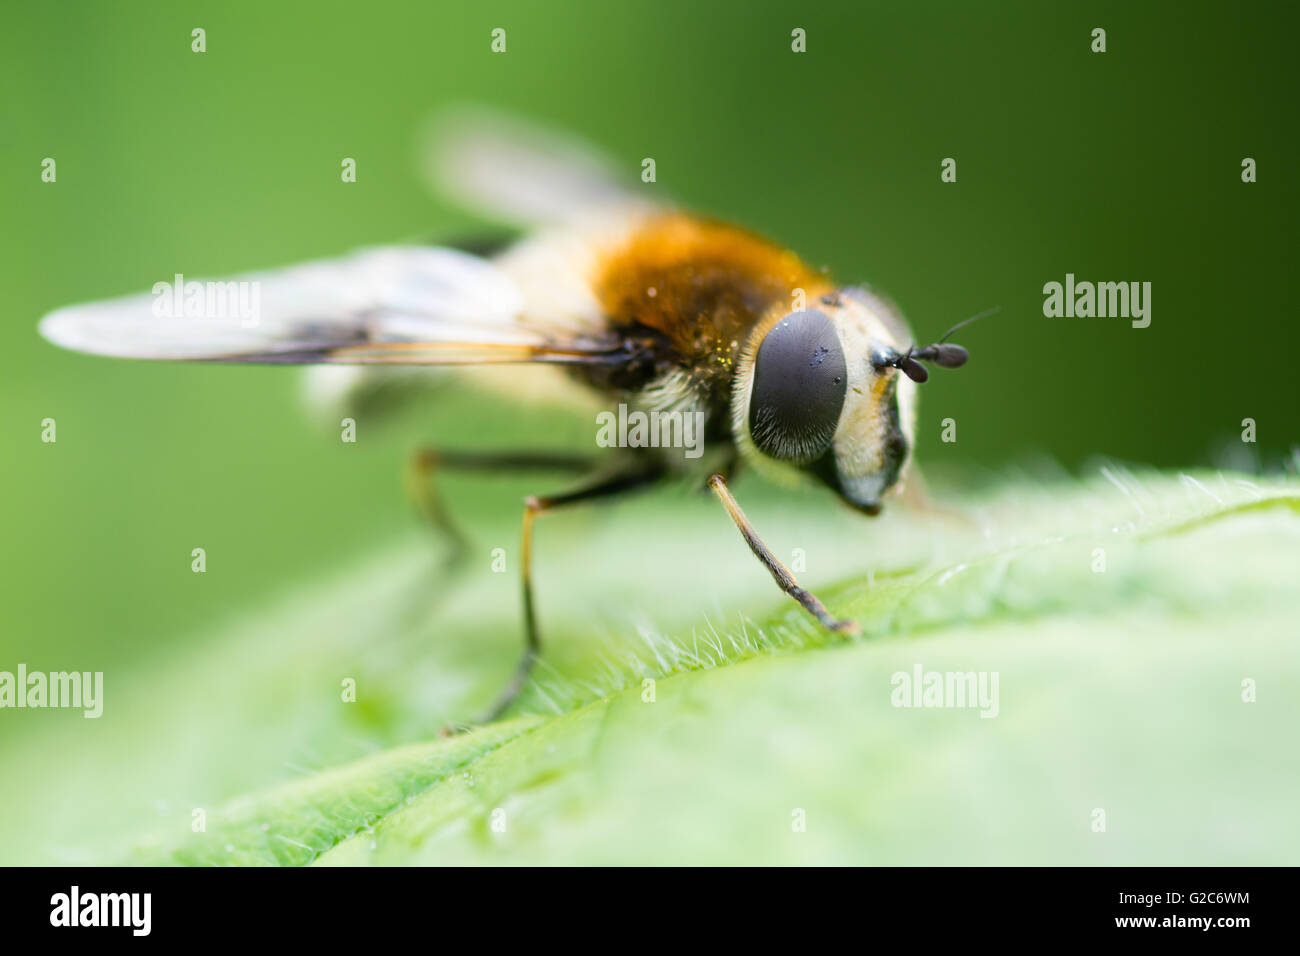 Leucozona lucorum hoverfly. Insecte frappant dans la famille Syrphidae, montrant le détail des yeux composés Banque D'Images